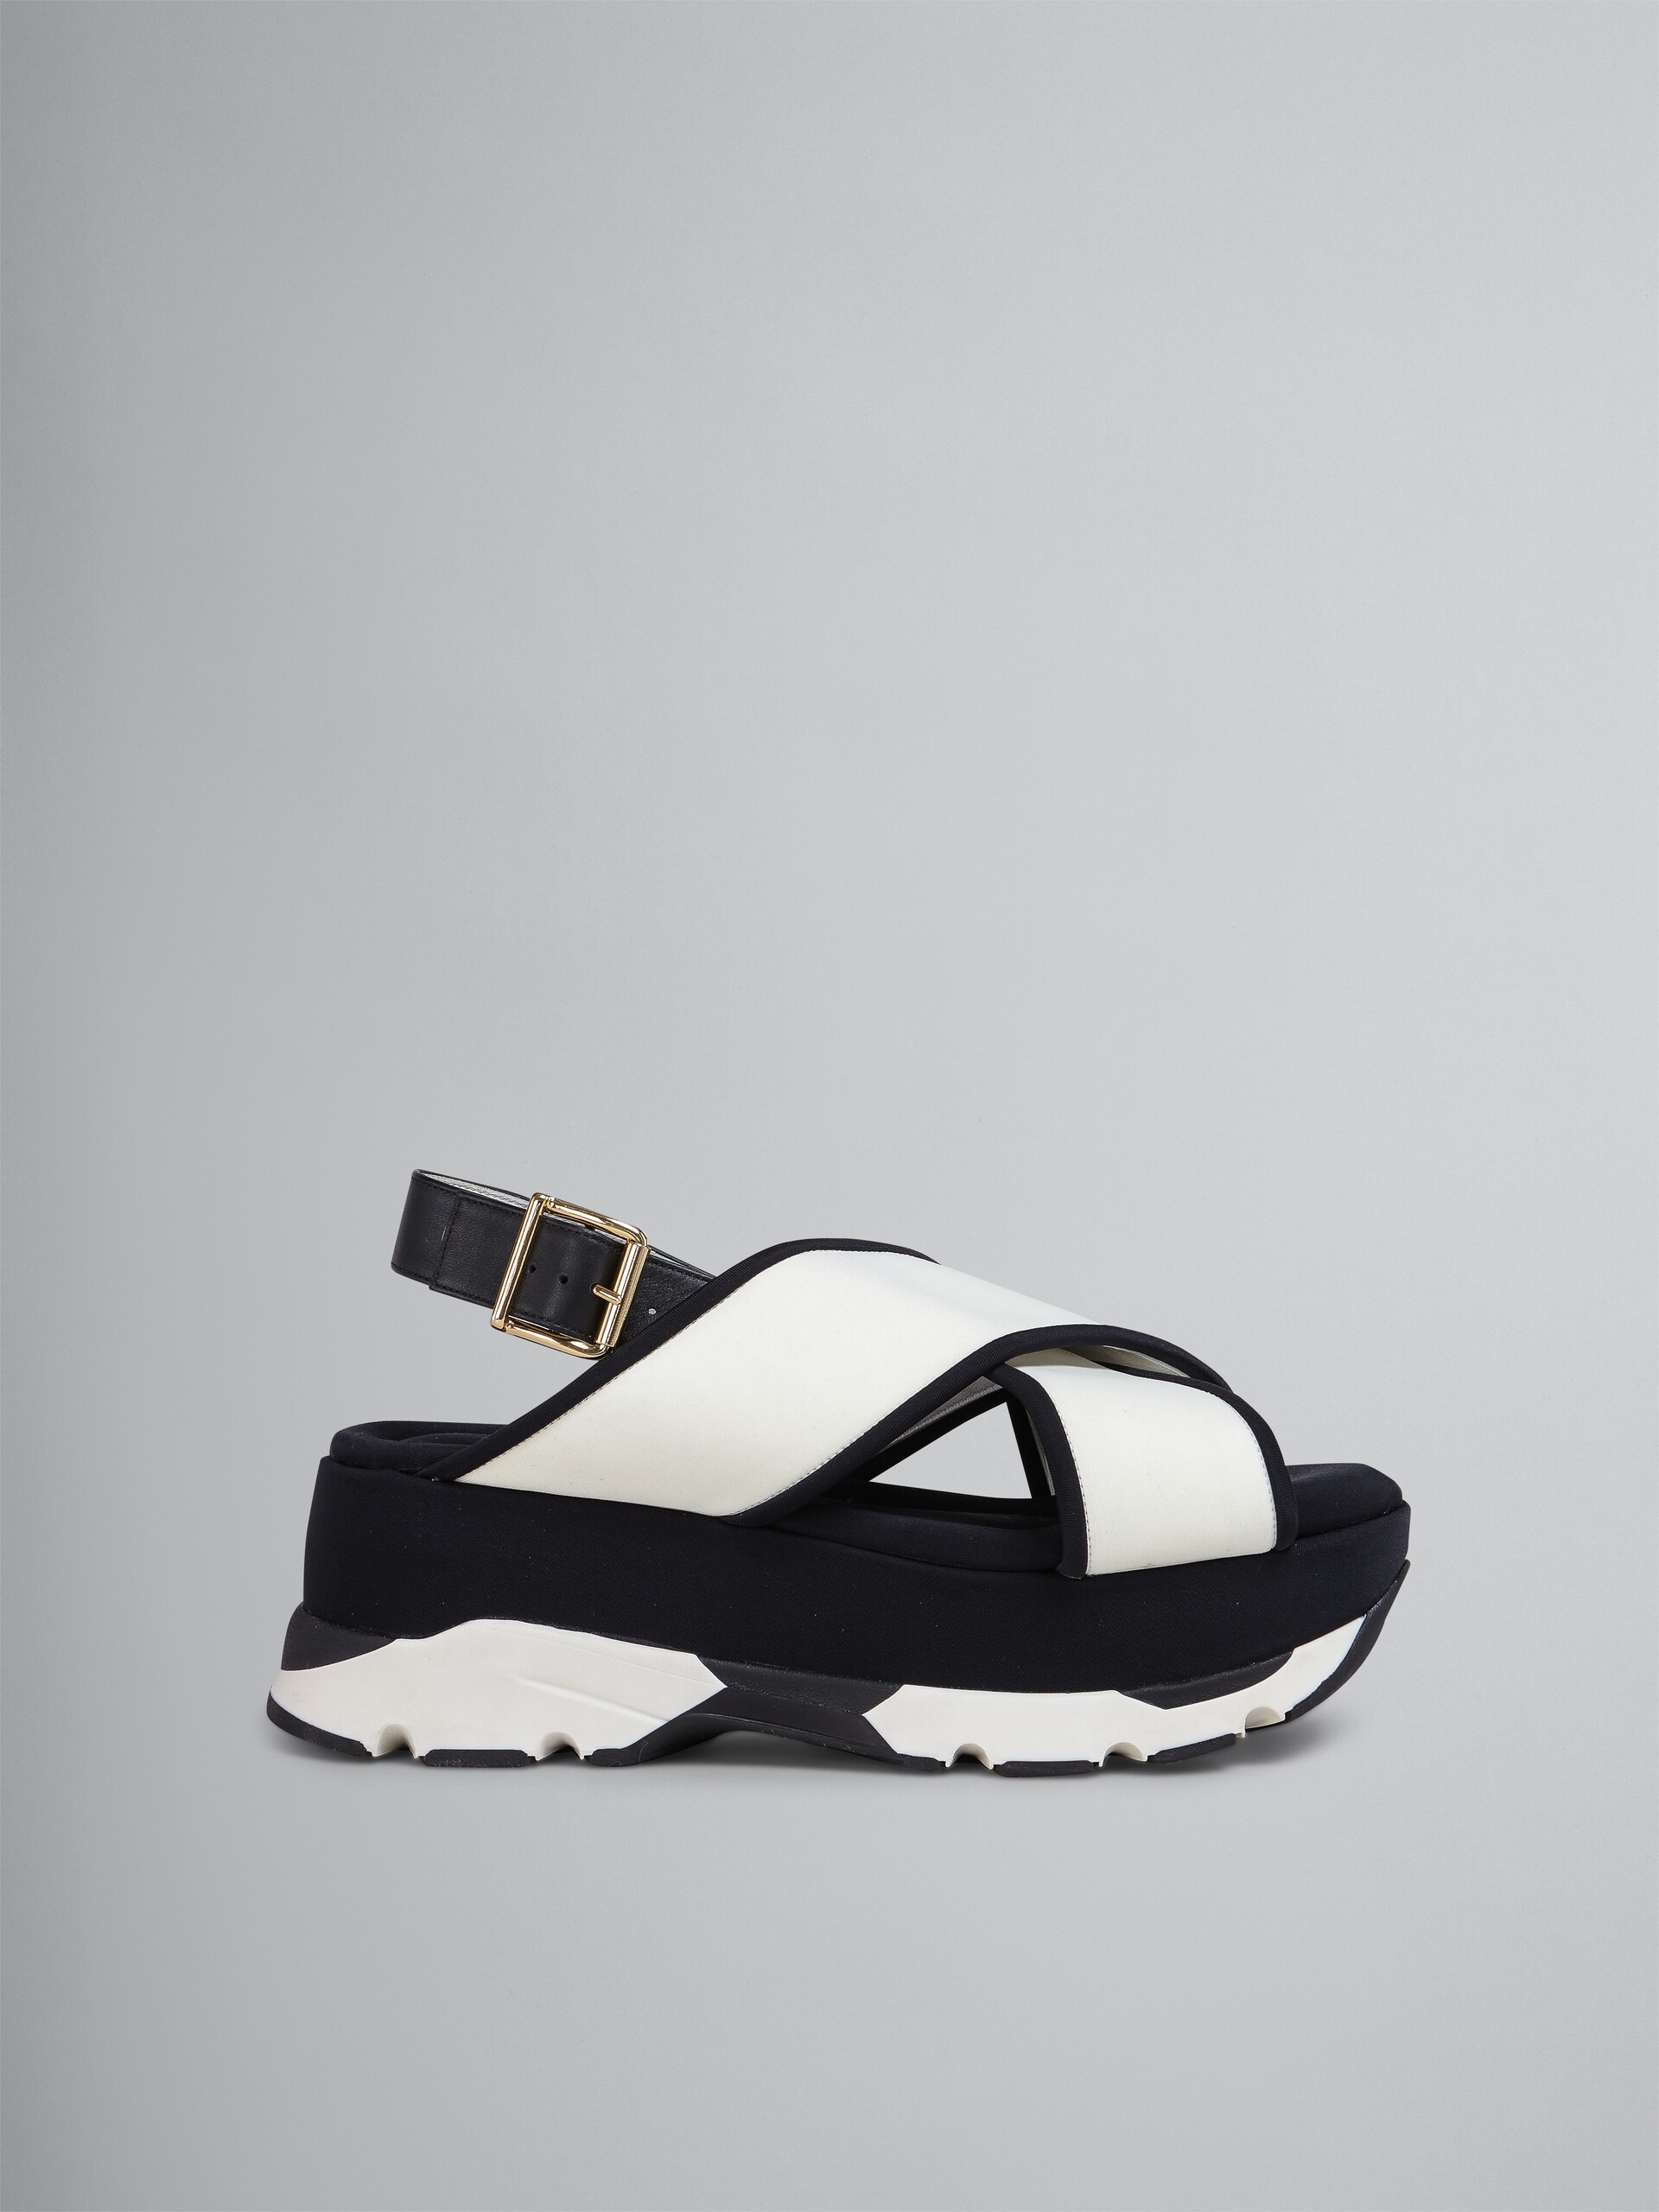 Sandalo zeppa in tessuto tecnico bianco e nero - Sandali - Image 1